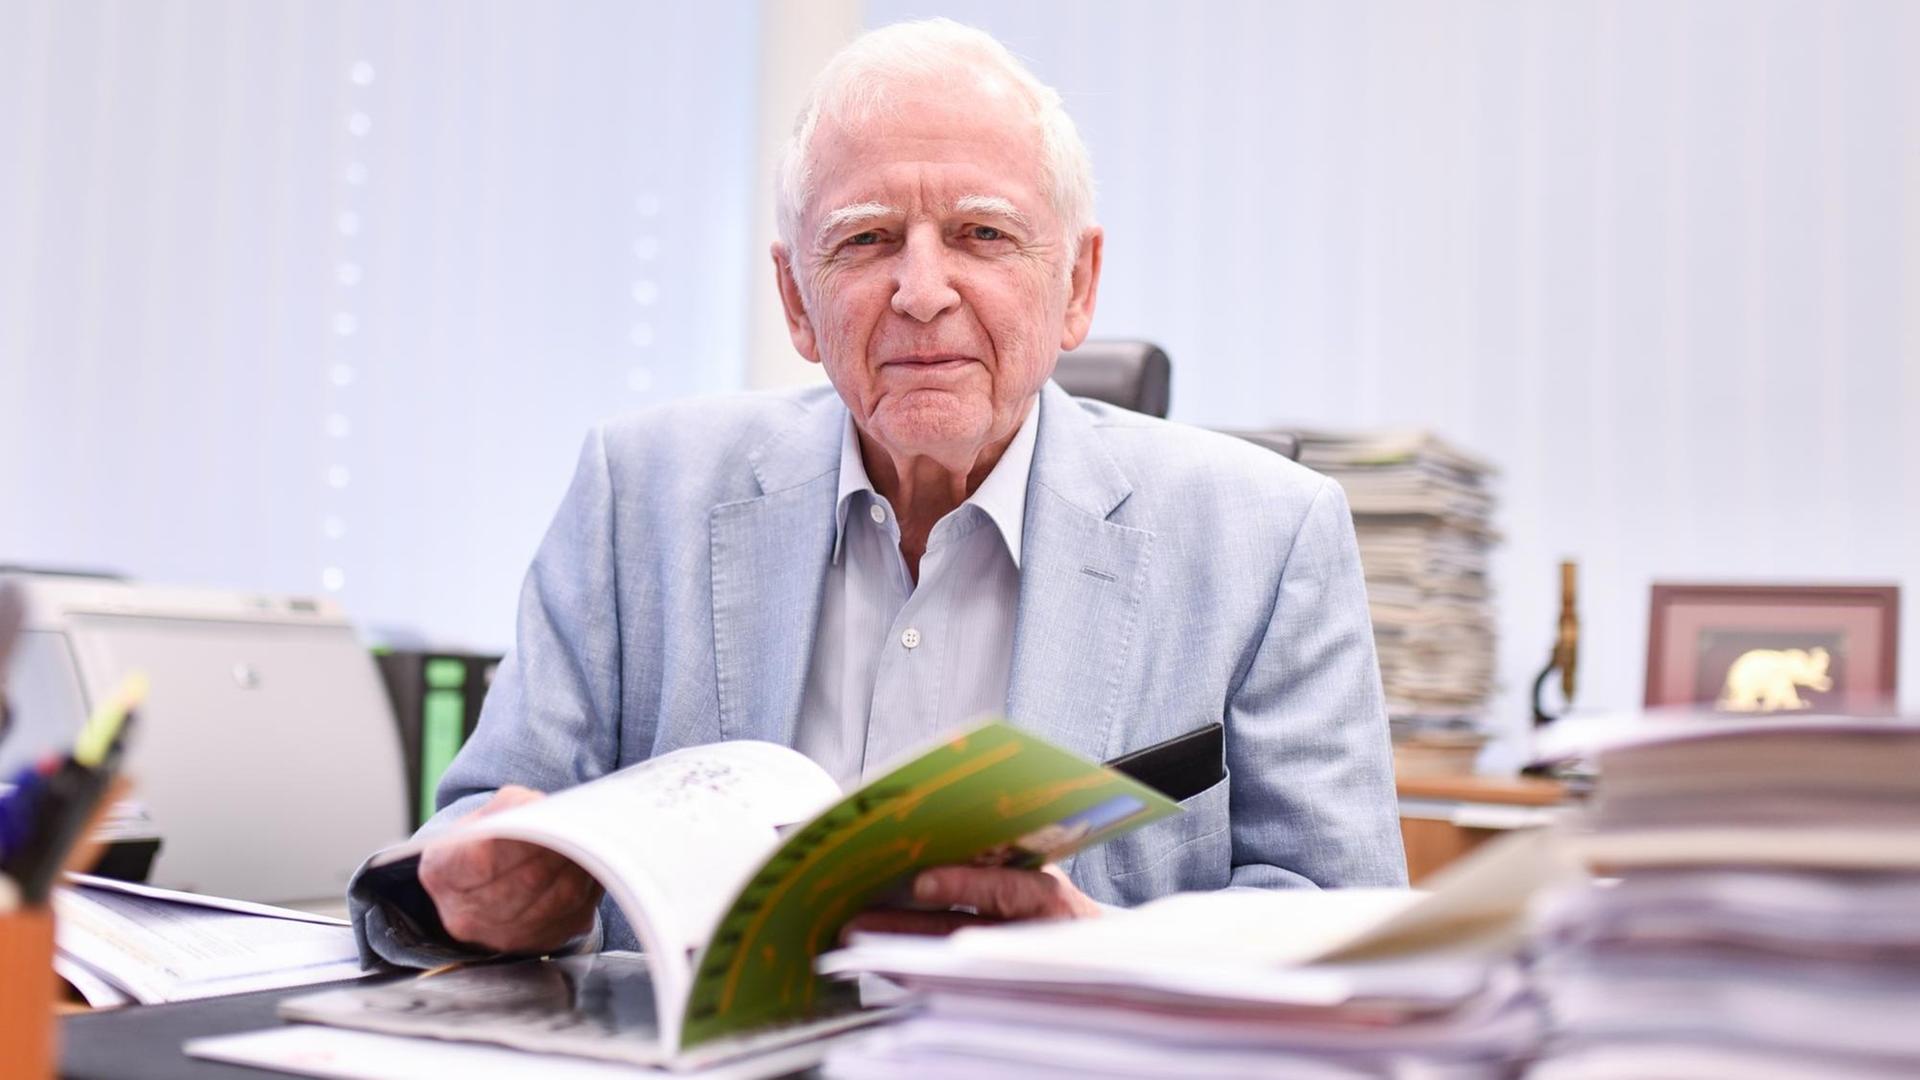 Krebsforschung - Medizin-Nobelpreisträger Harald zur Hausen mit 87 Jahren gestorben